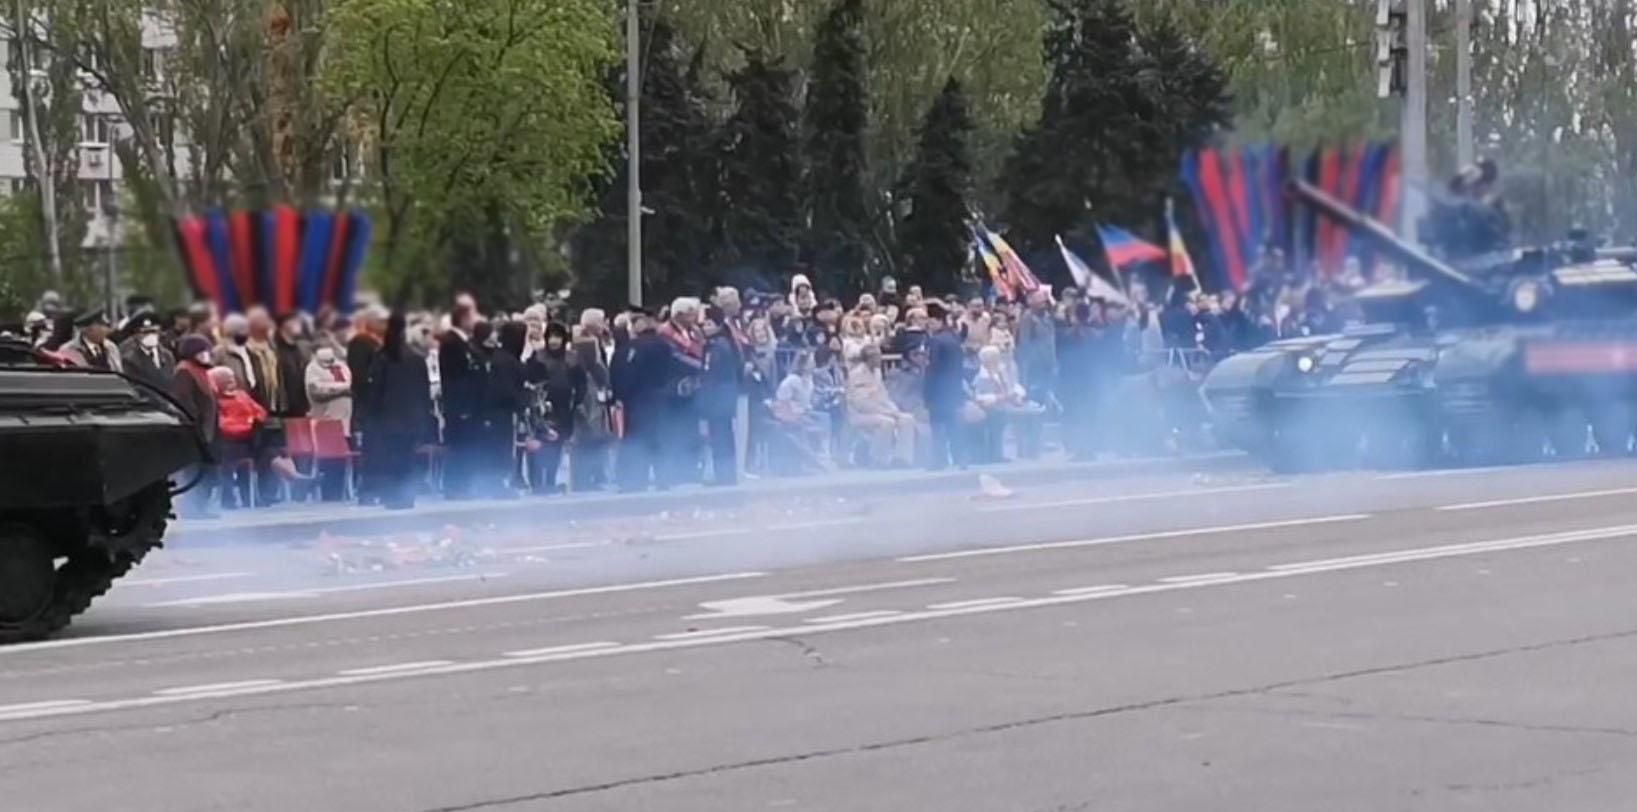 ОБСЕ подсчитала количество зрителей на параде в оккупированном Донецке